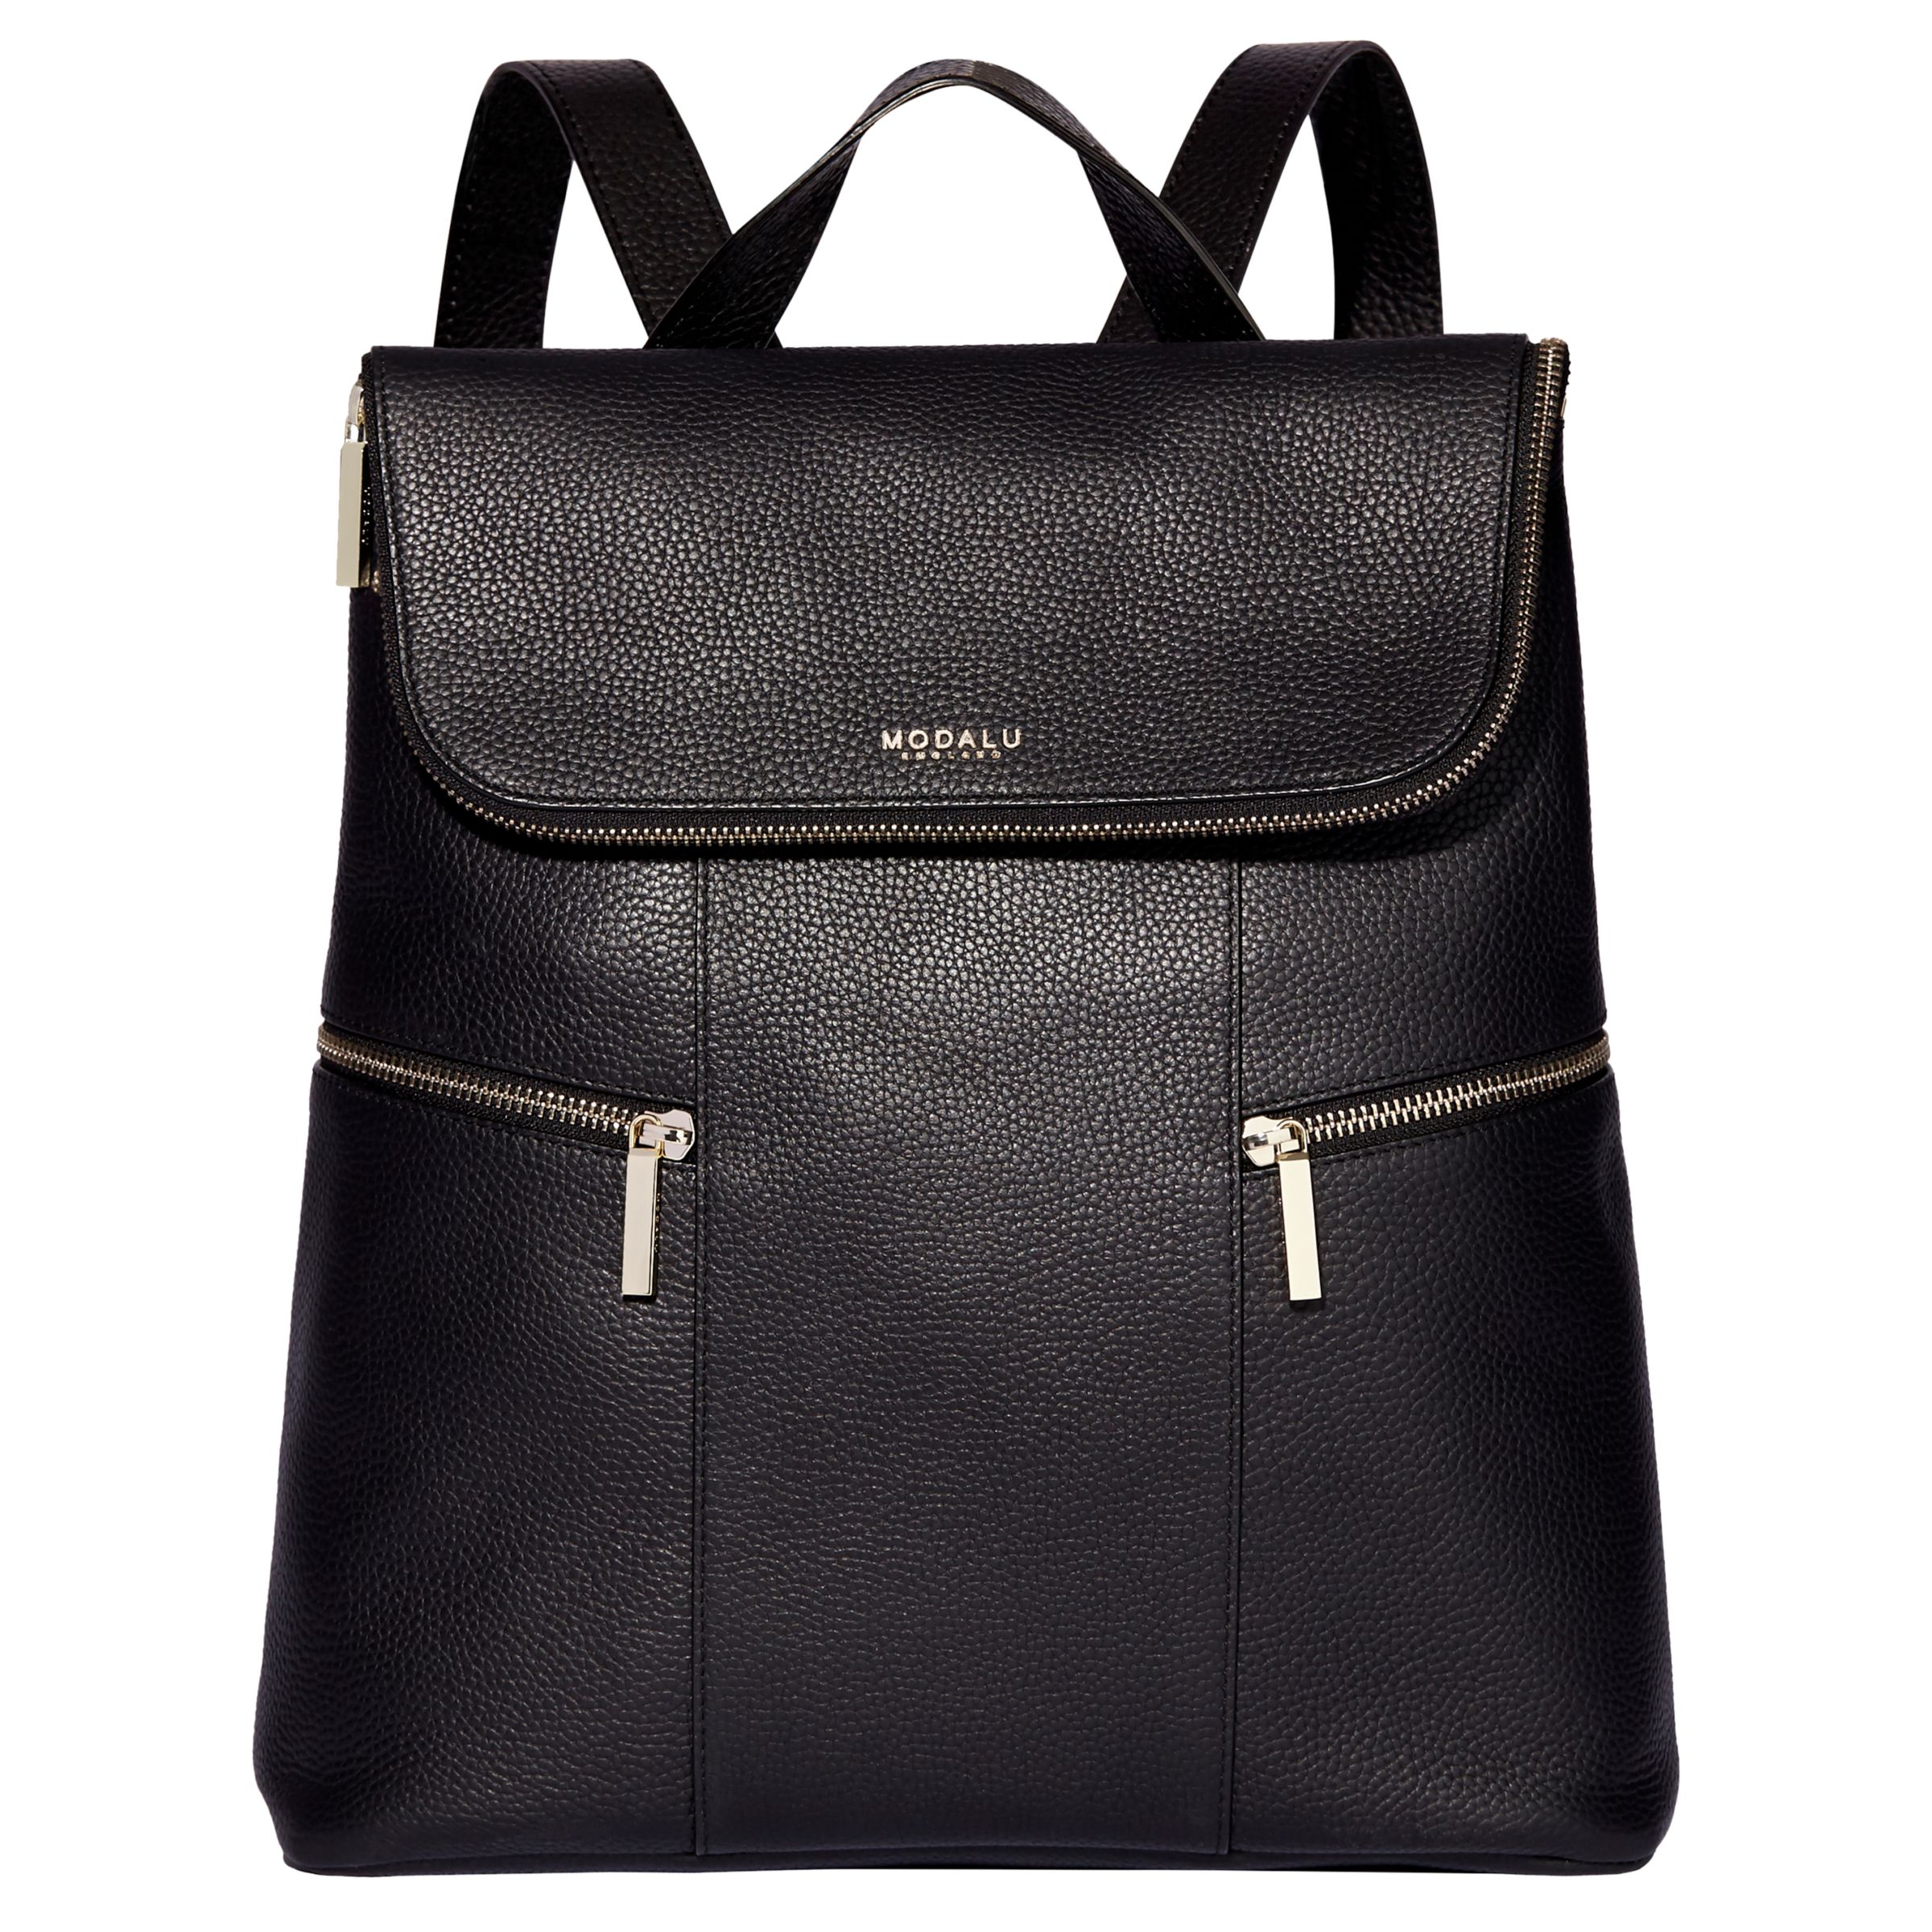 Modalu Marlowe Leather Backpack